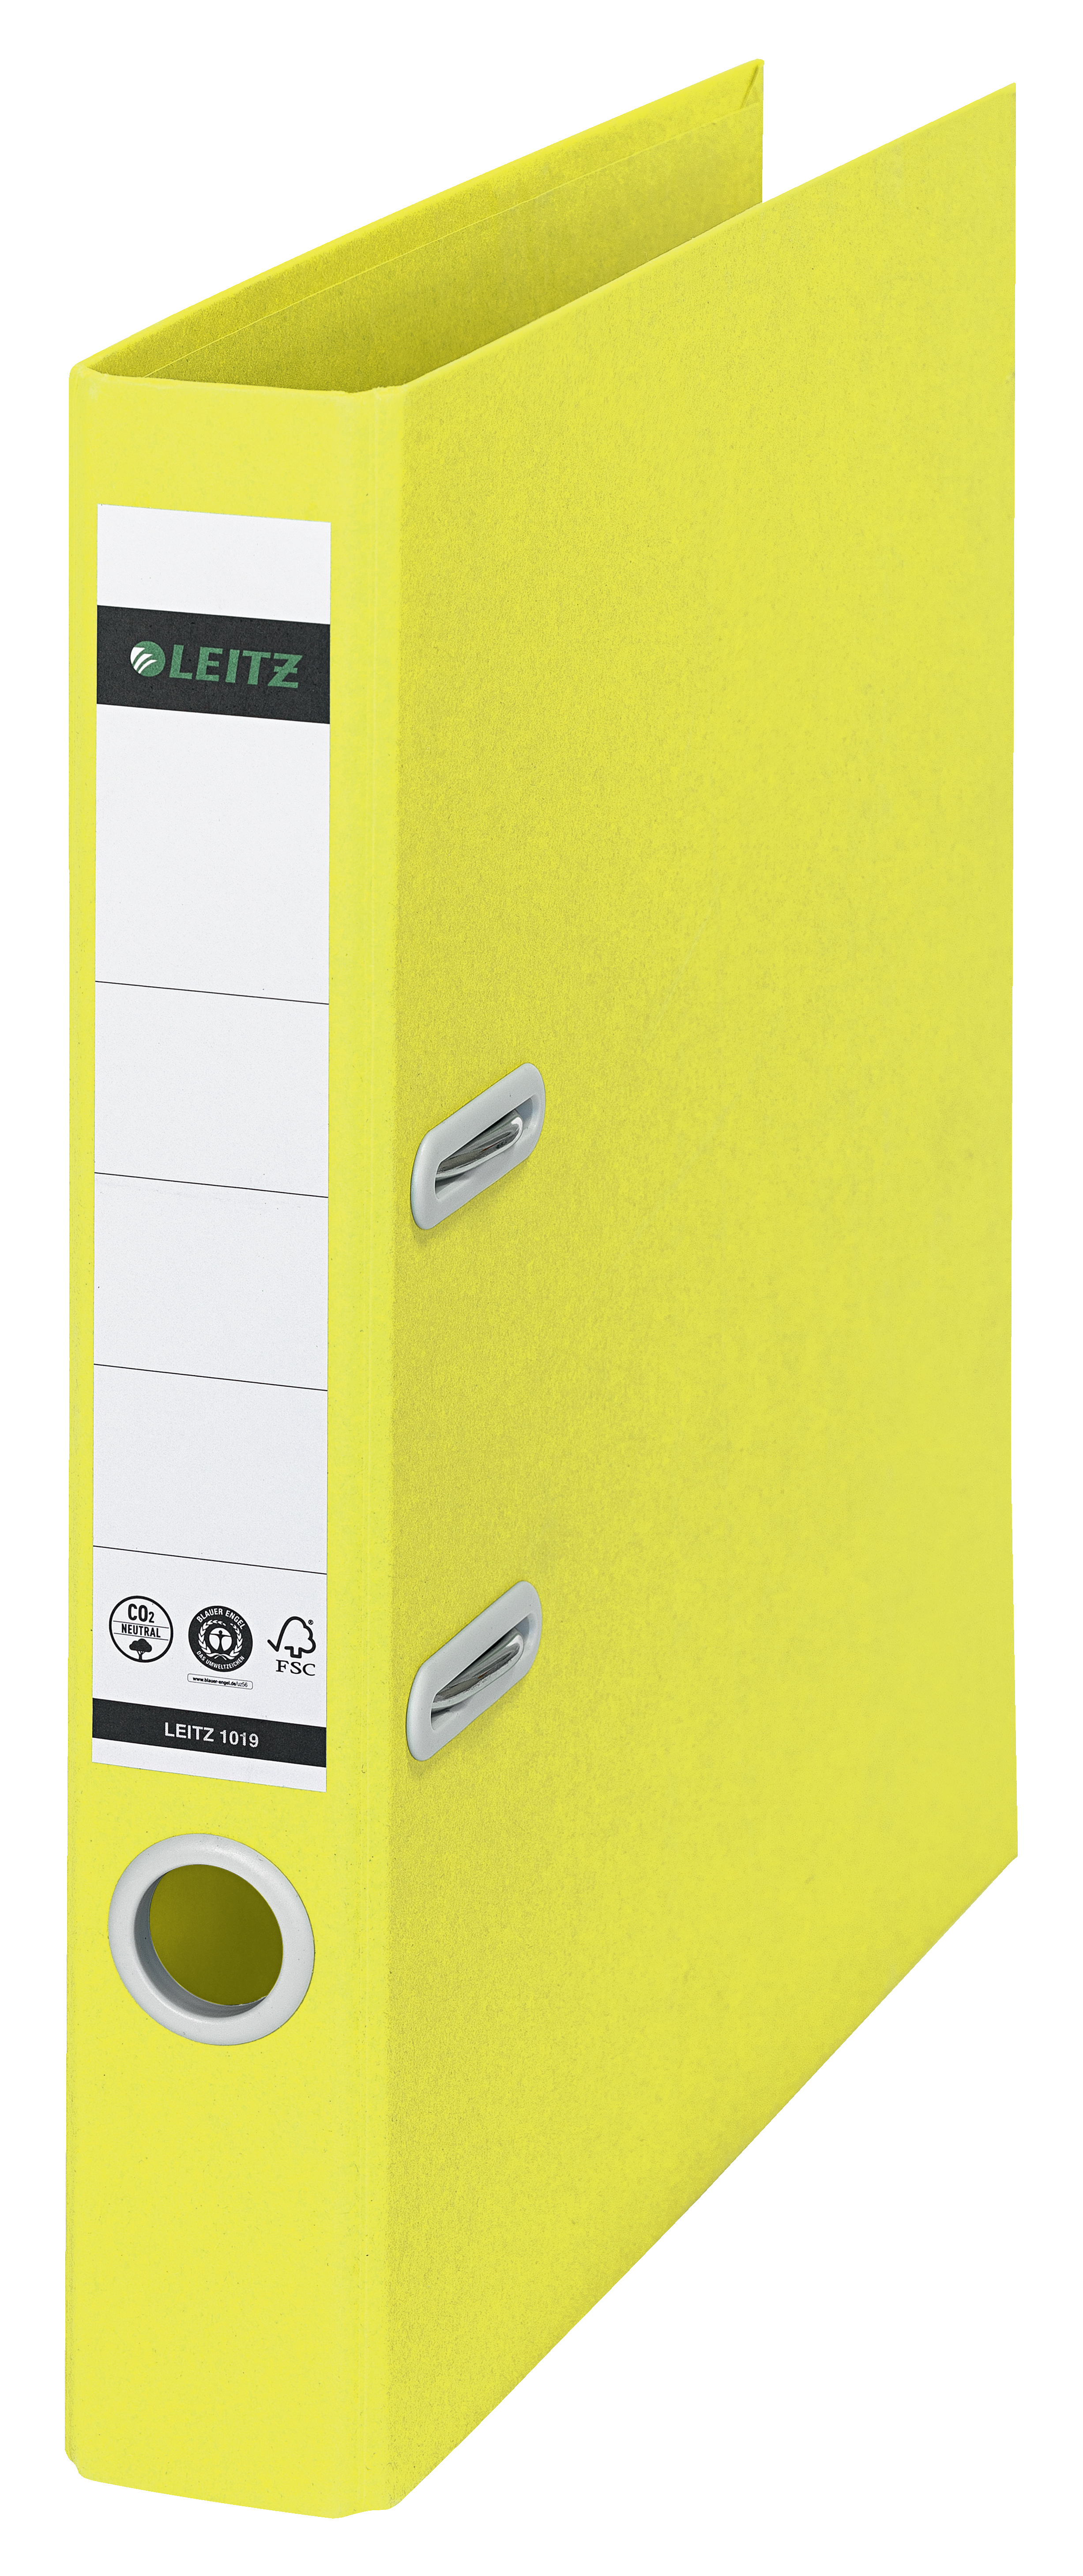 LEITZ Classeur Recycle 5.2cm 1019-00-15 jaune A4